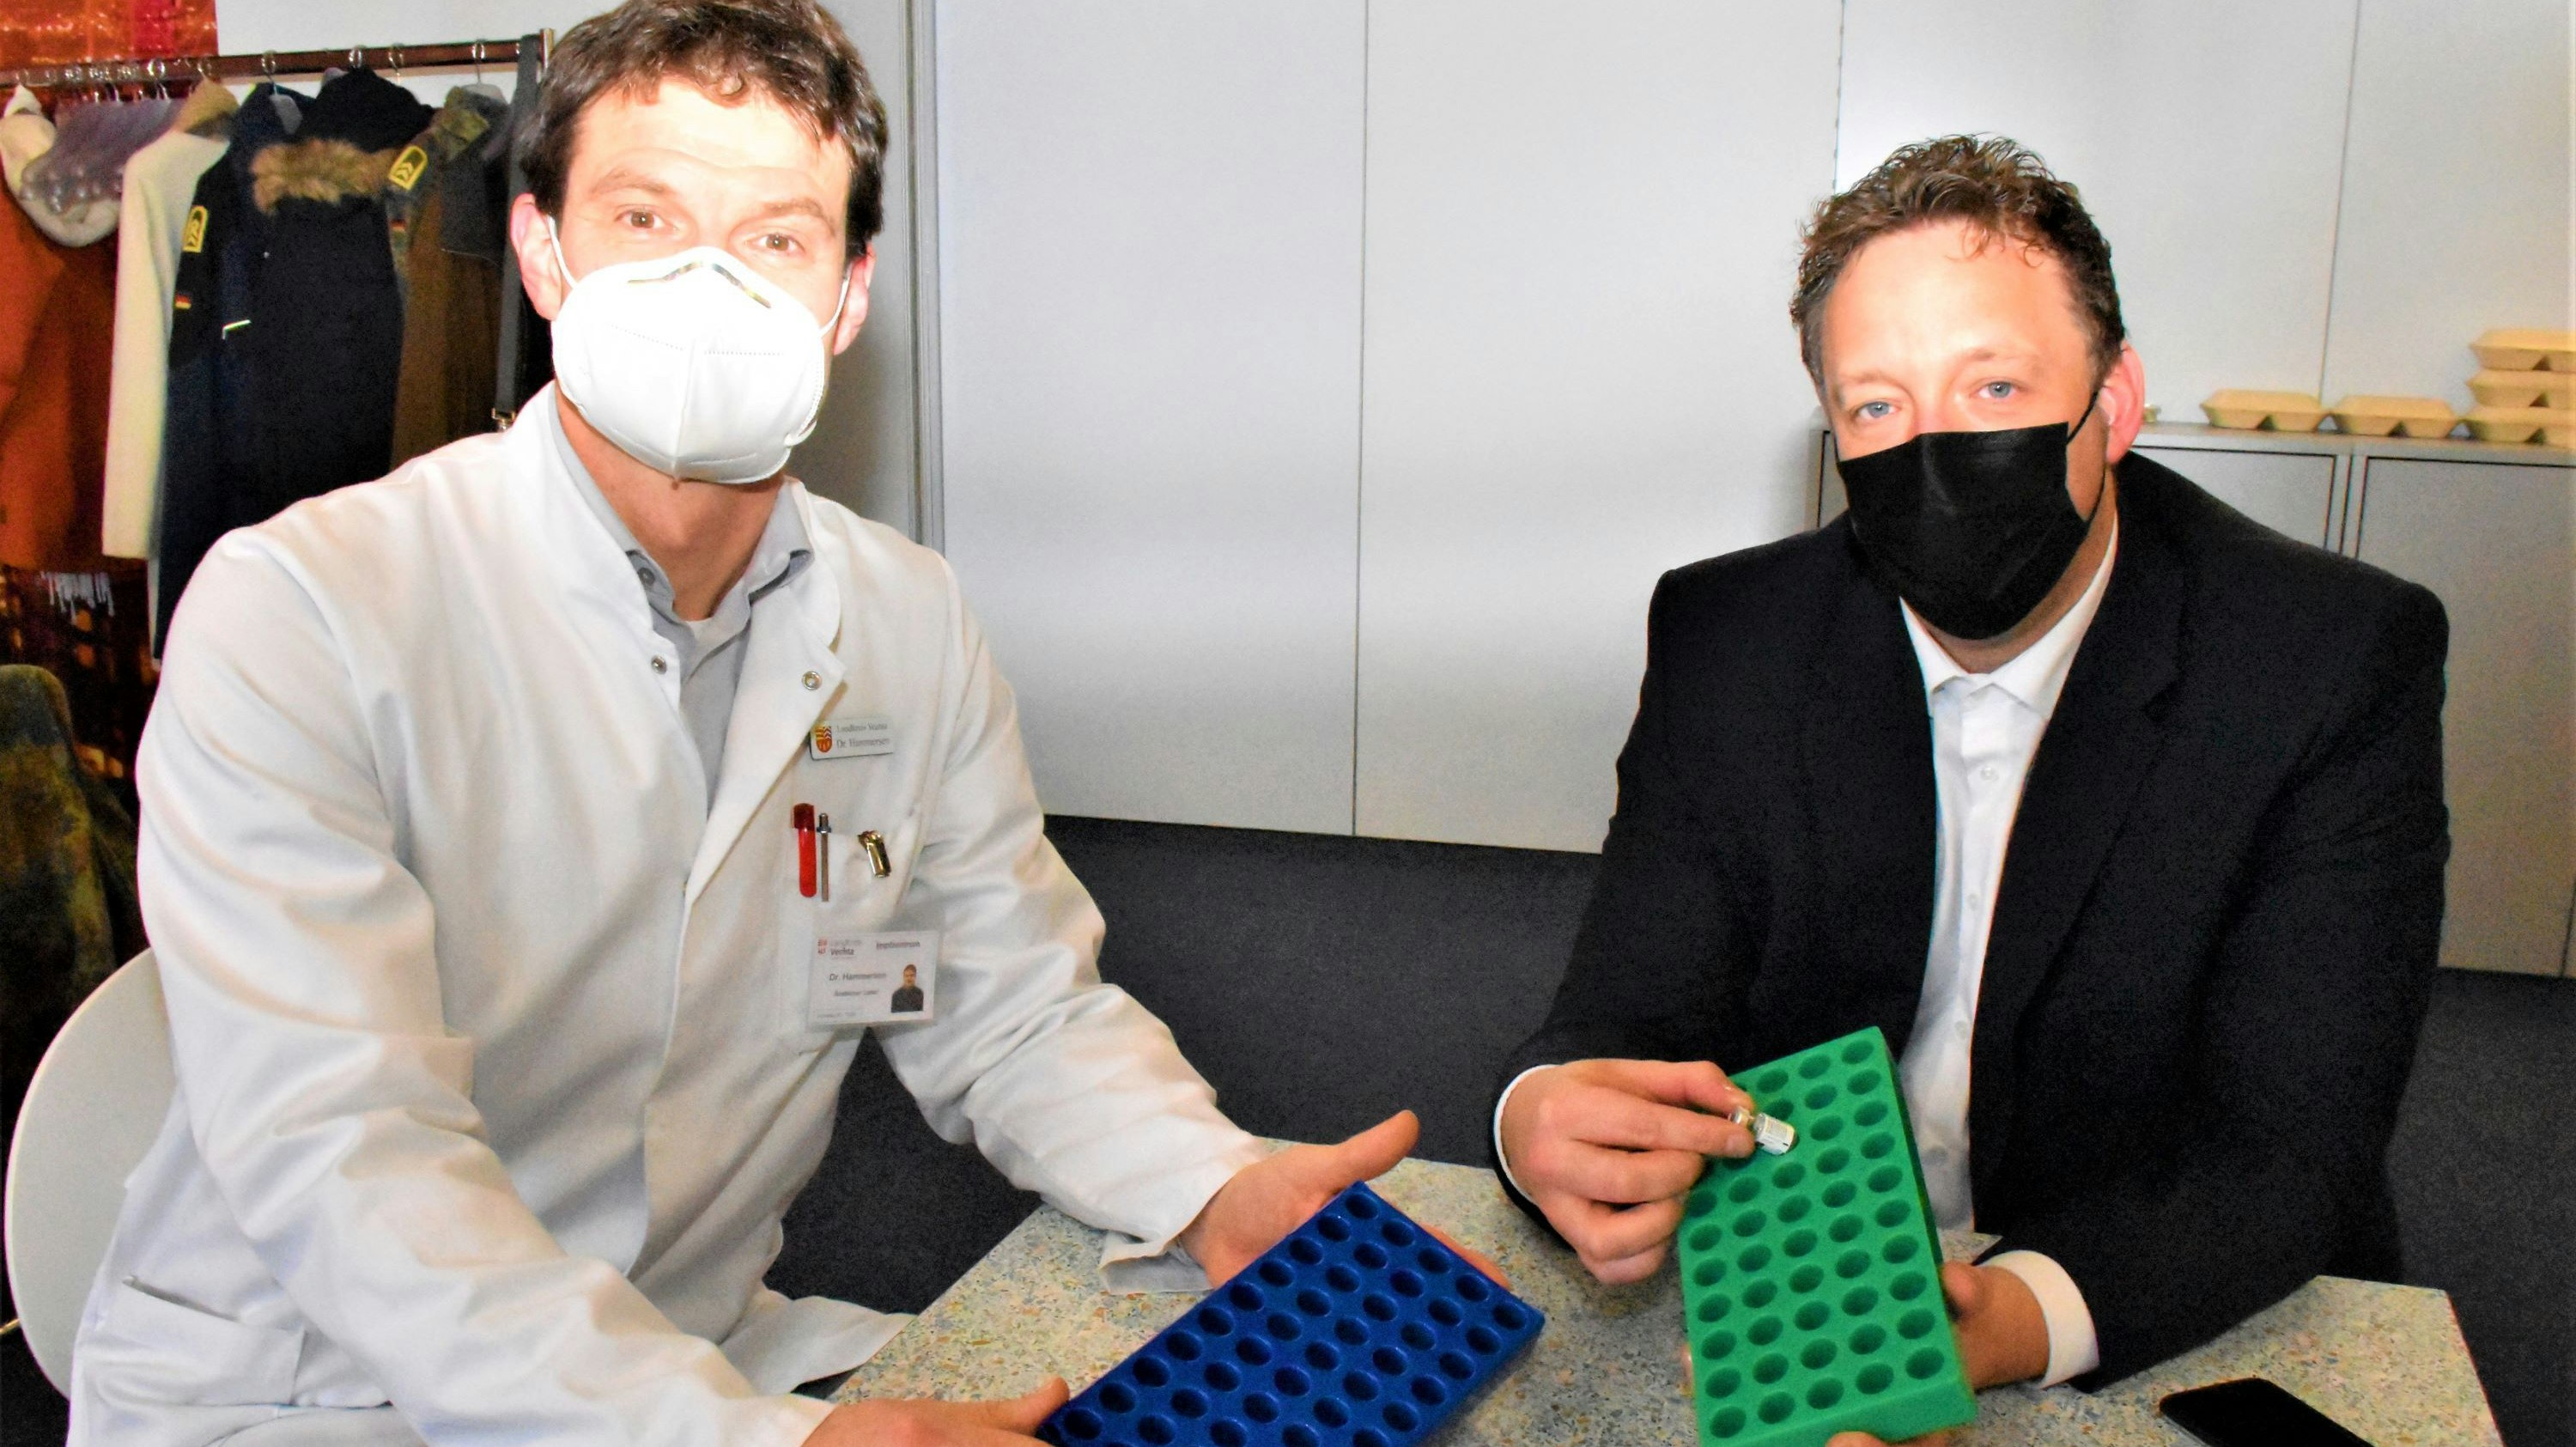 Neue Halterungen für den Biontech-Corona-Impfstoff: Dr. Frank Hammersen (links) mit der nicht passenden Minipalette und Christian Ewald mit der passenden Halterung. Foto: Kühn